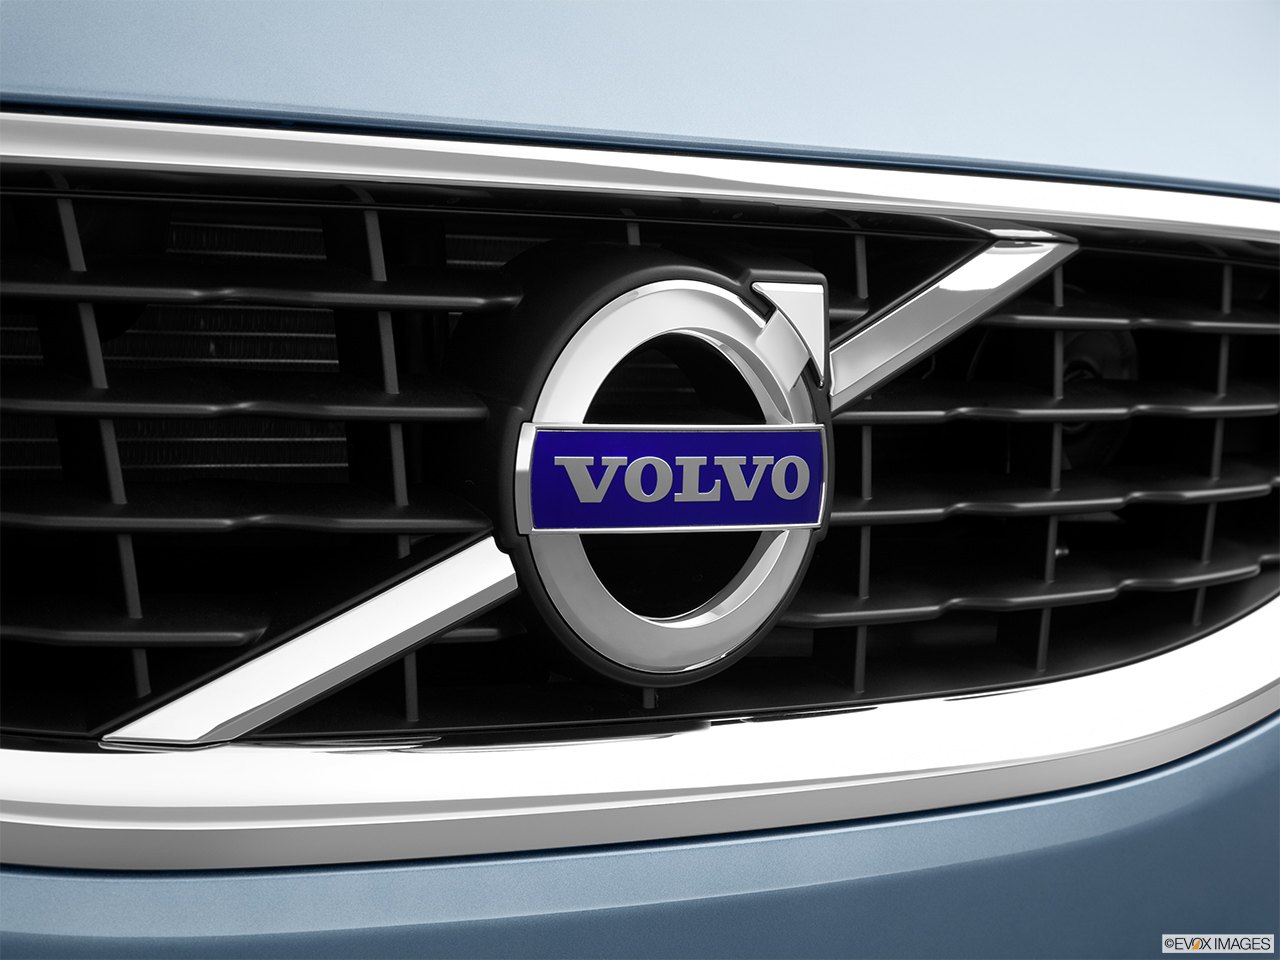 2013 Volvo C70 T5 Platinum Rear manufacture badge/emblem 